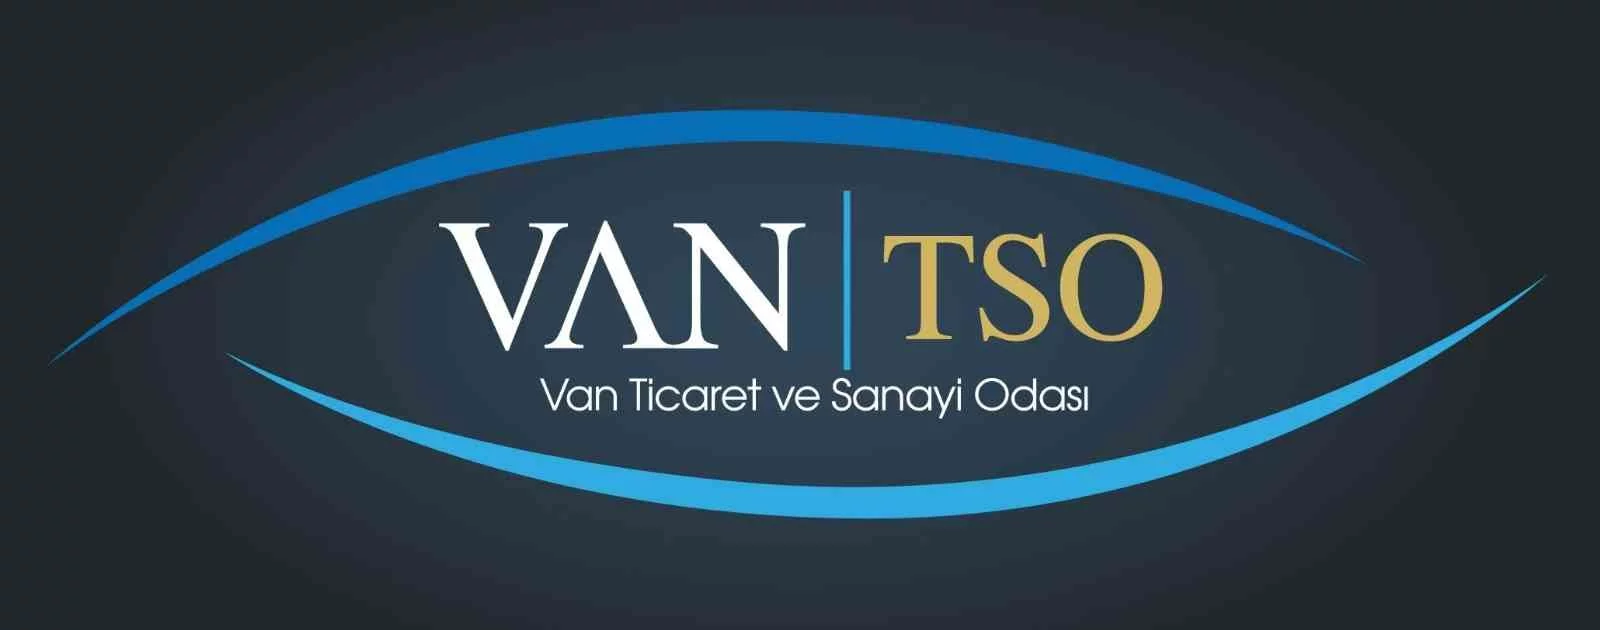 Van TSOdan ‘uçak seferleri ve bilet fiyatı açıklaması